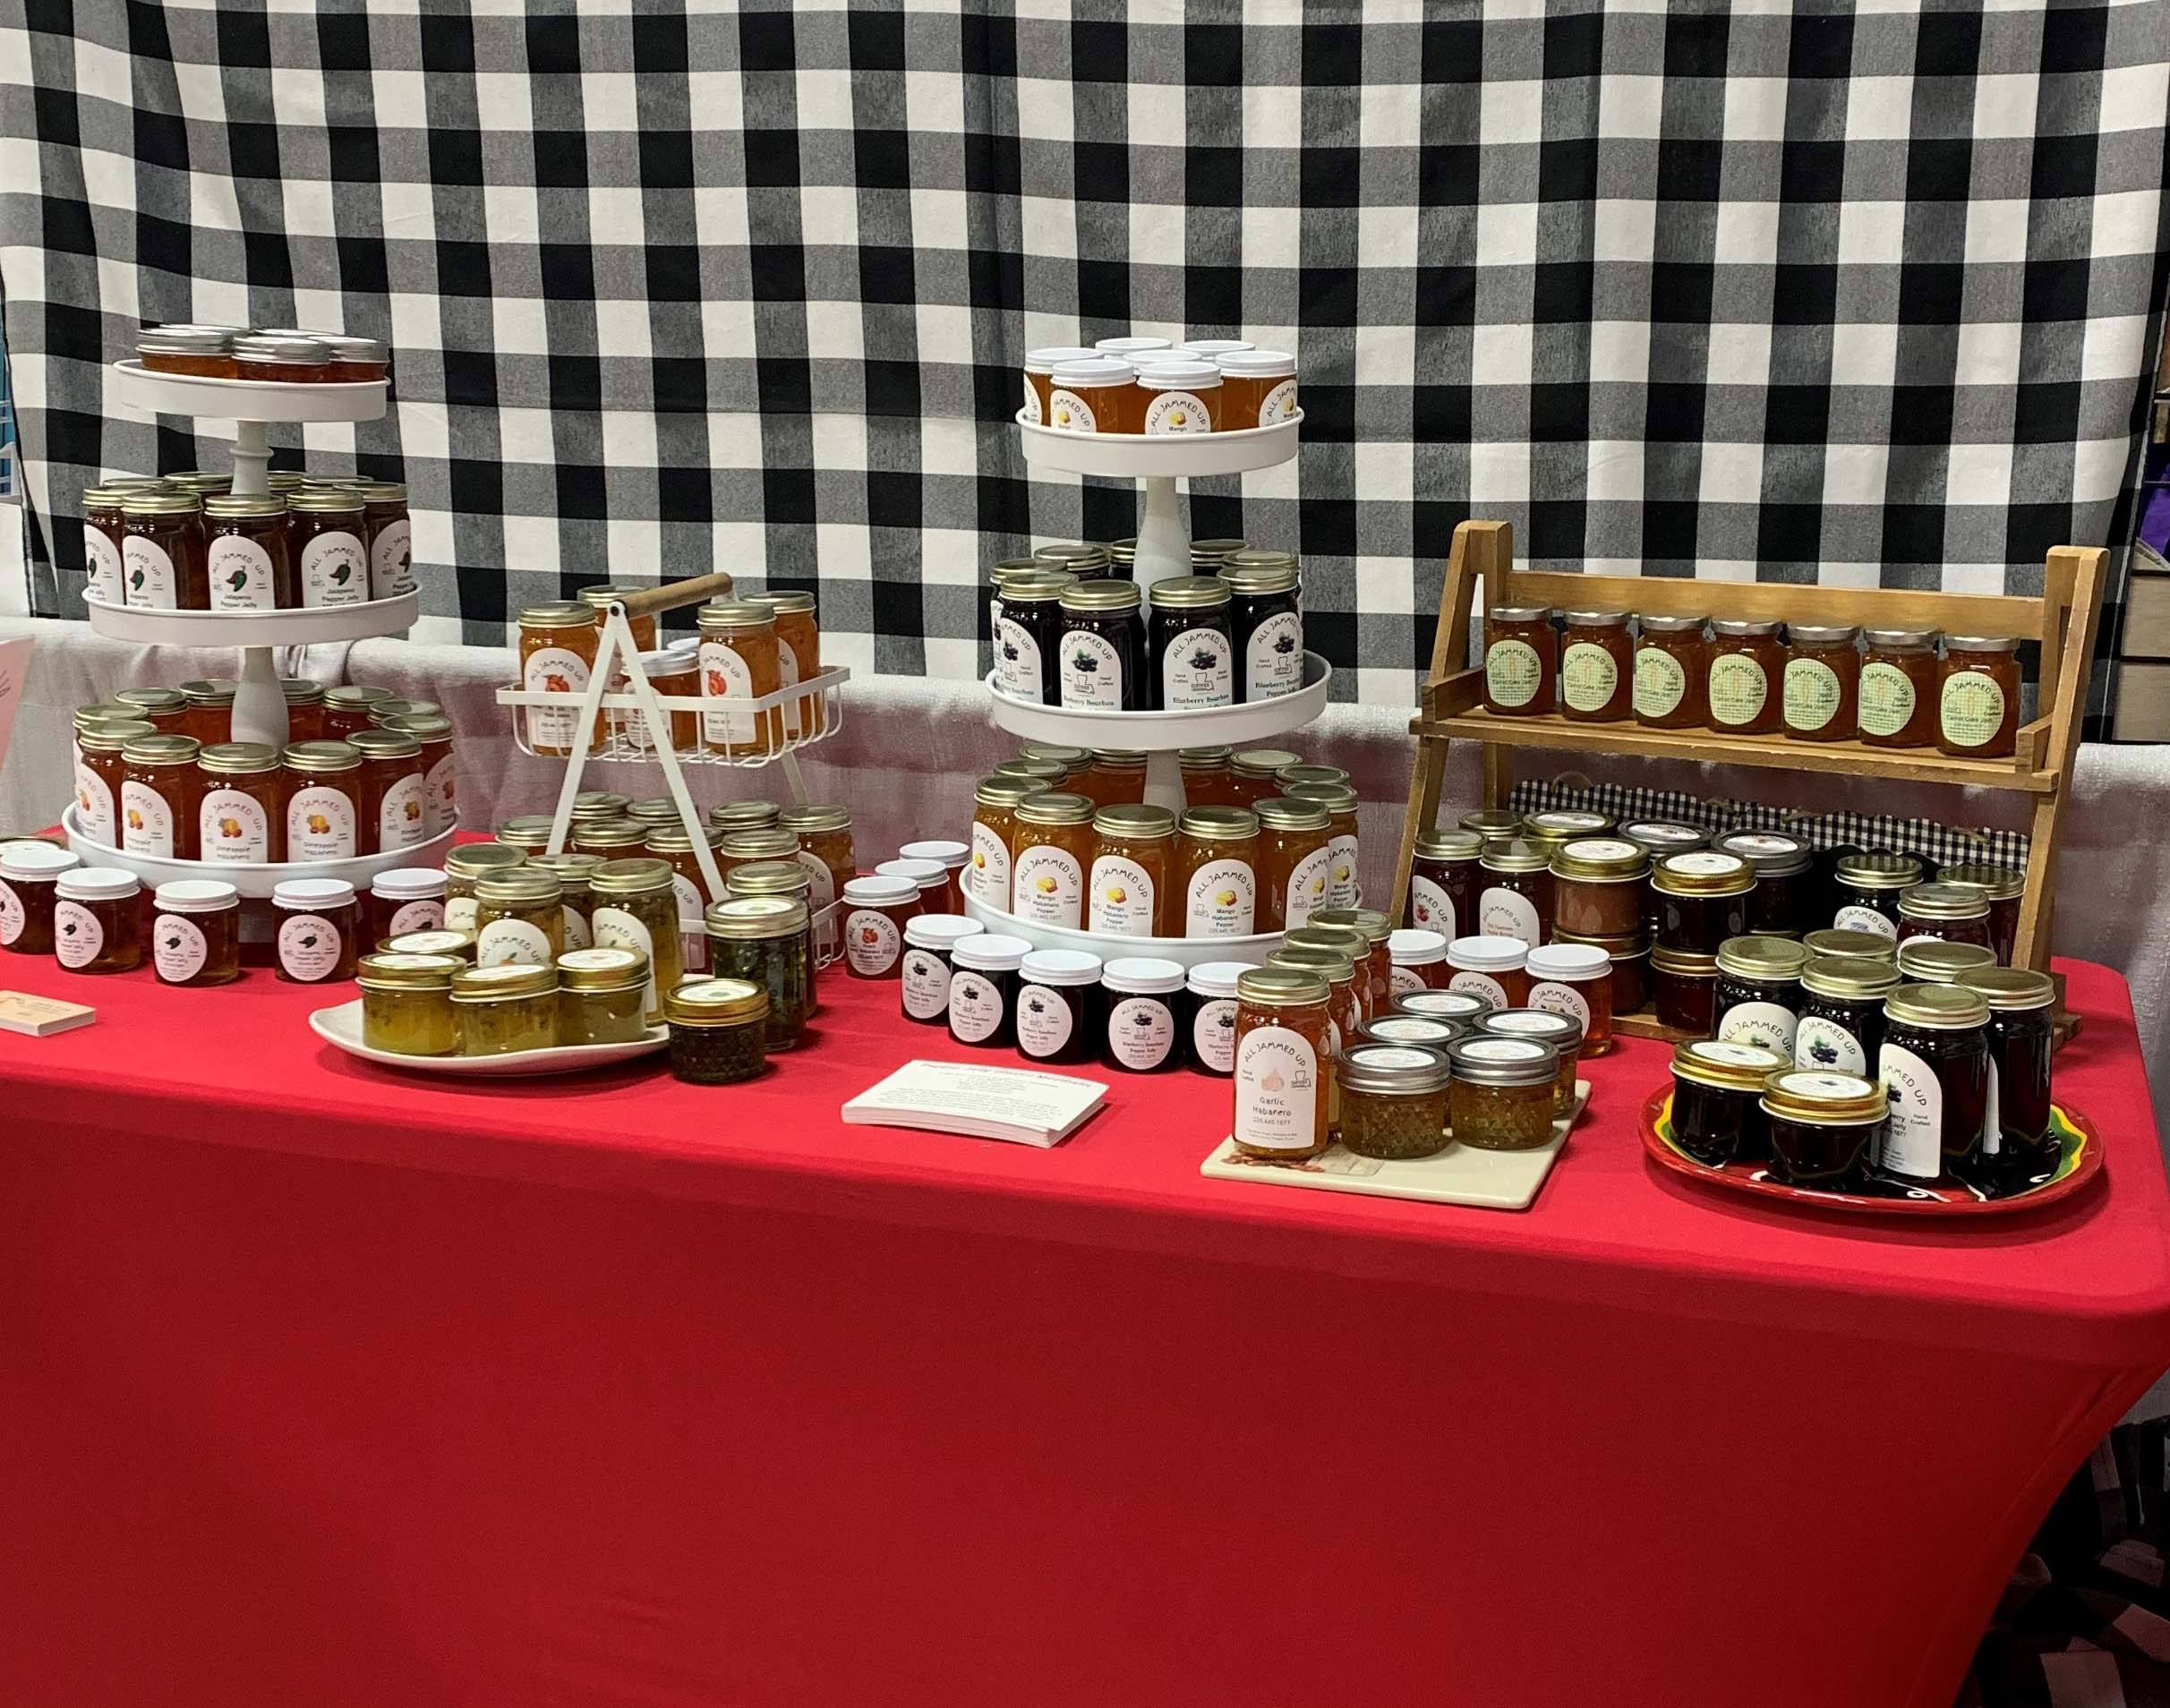 Table display of homemade jams